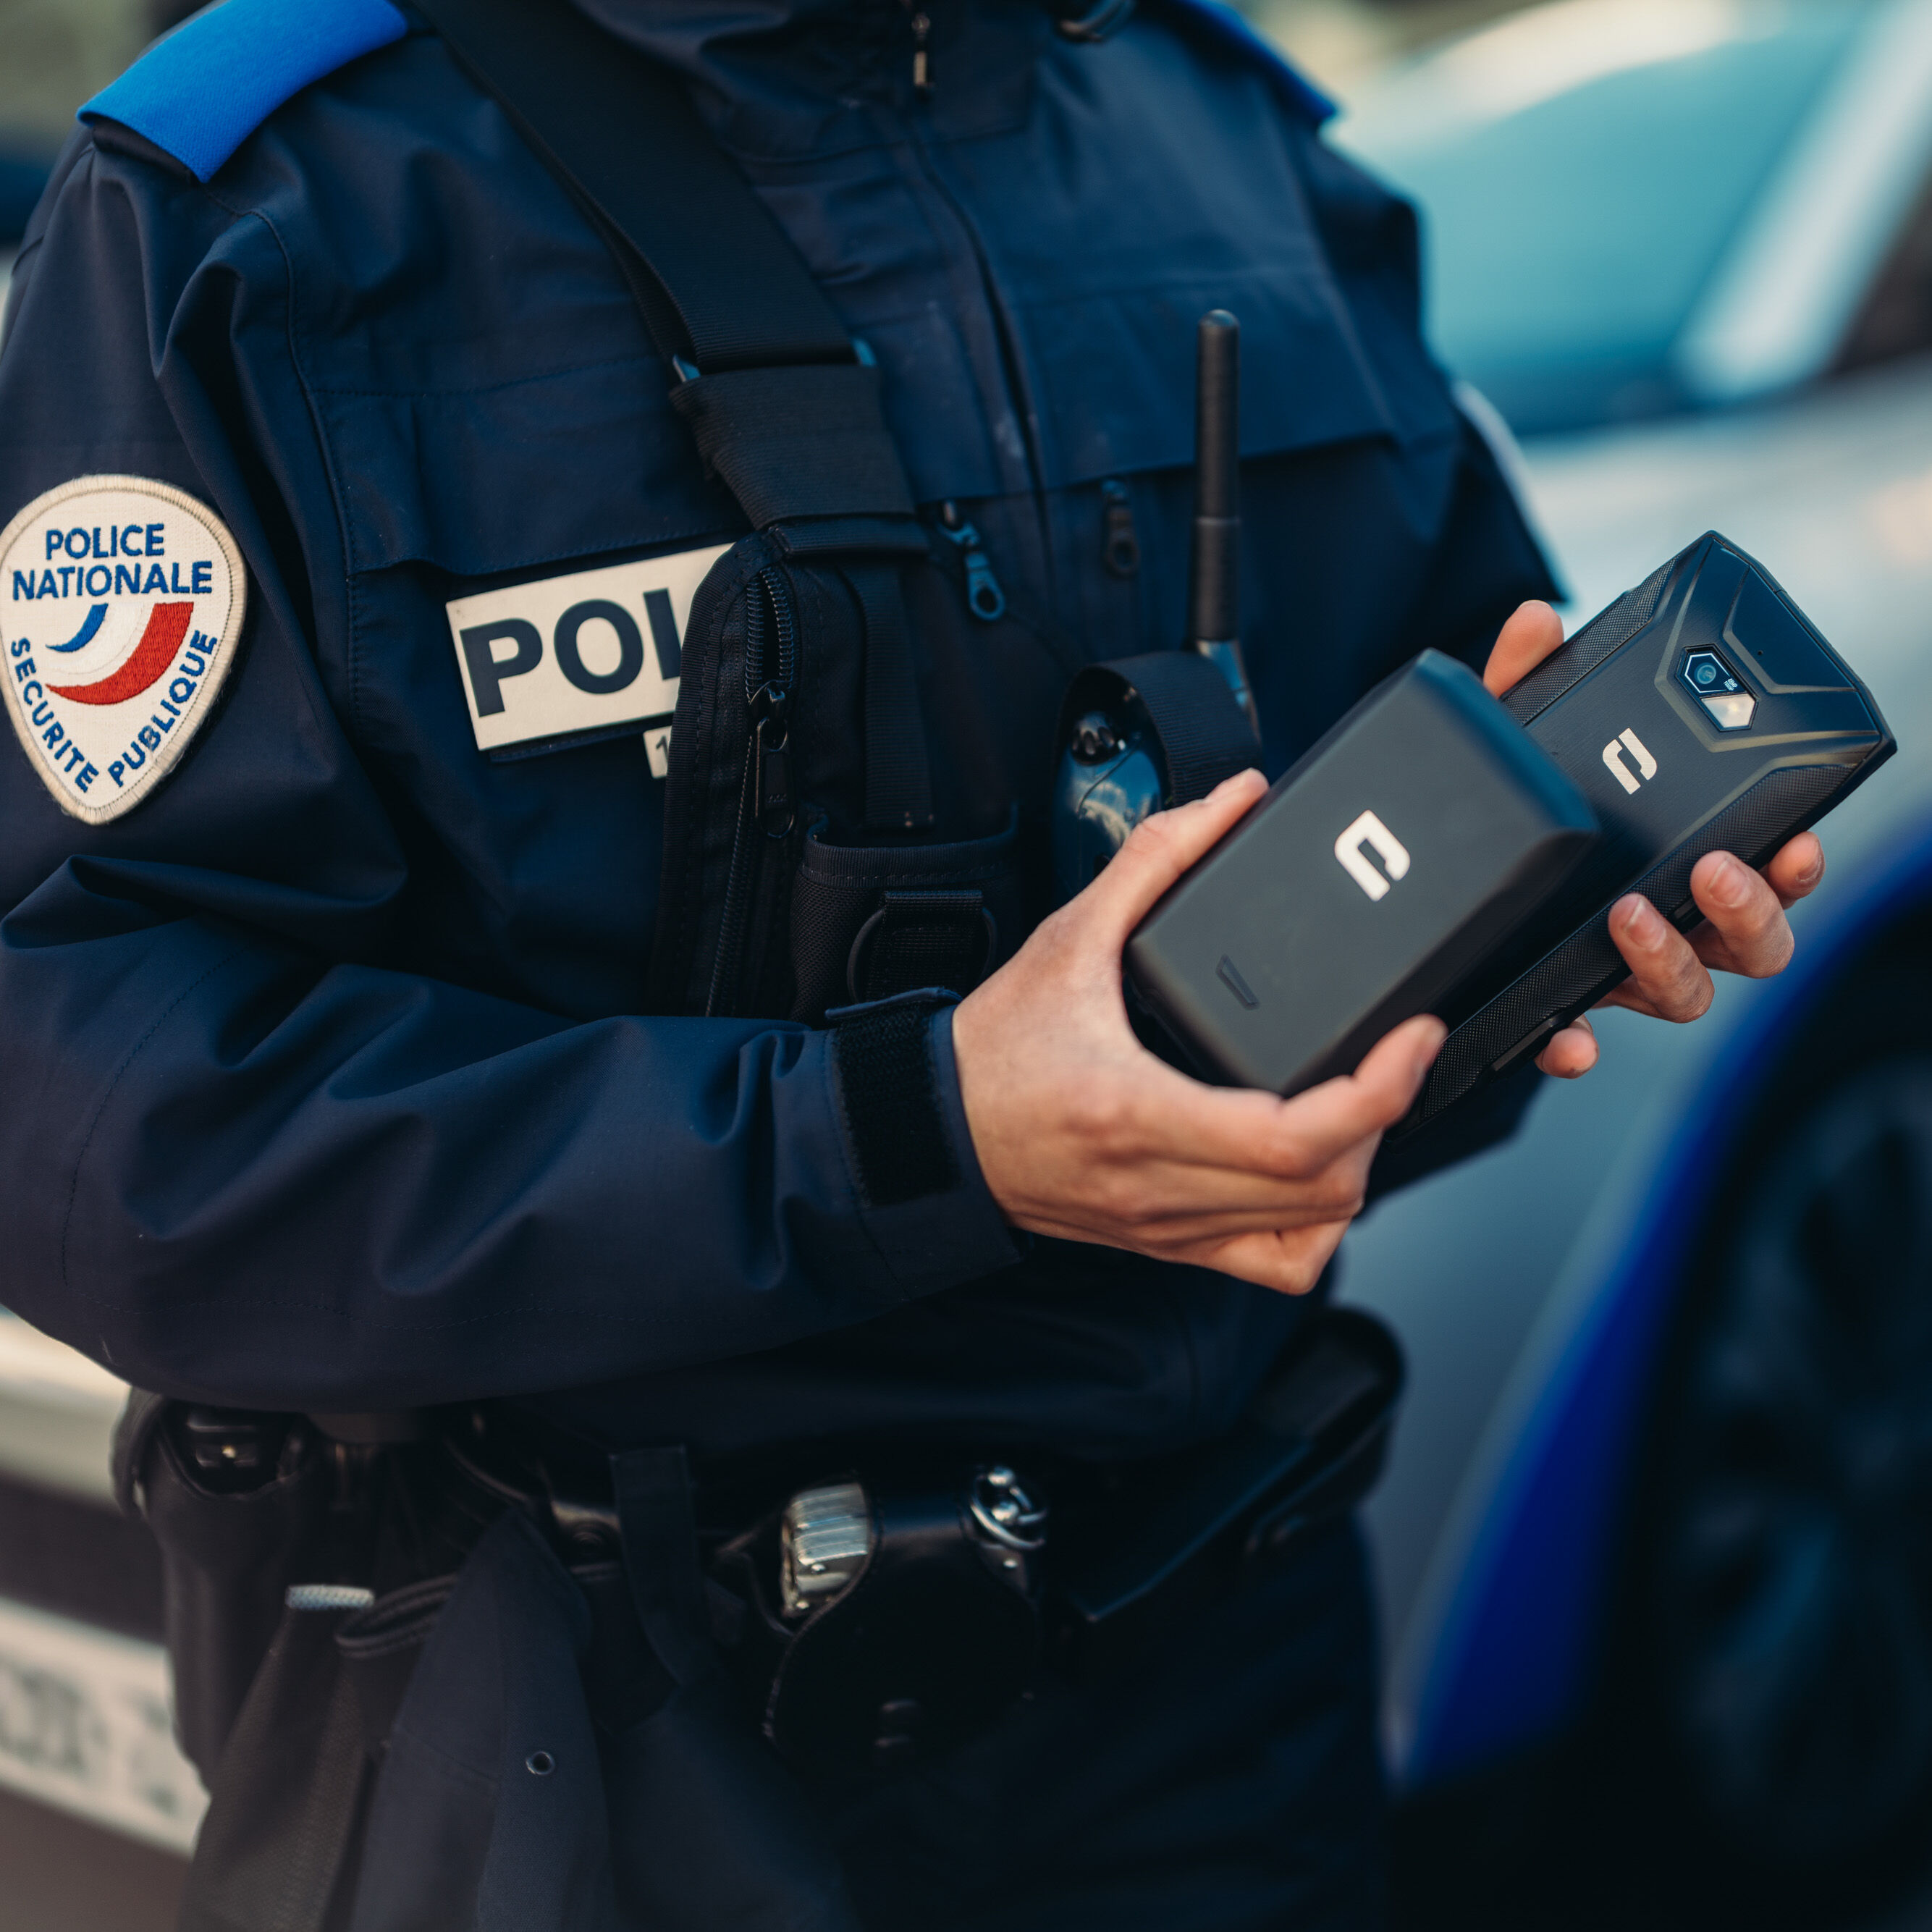 Agente de policía con smartphone Crosscall y batería externa X-POWER
